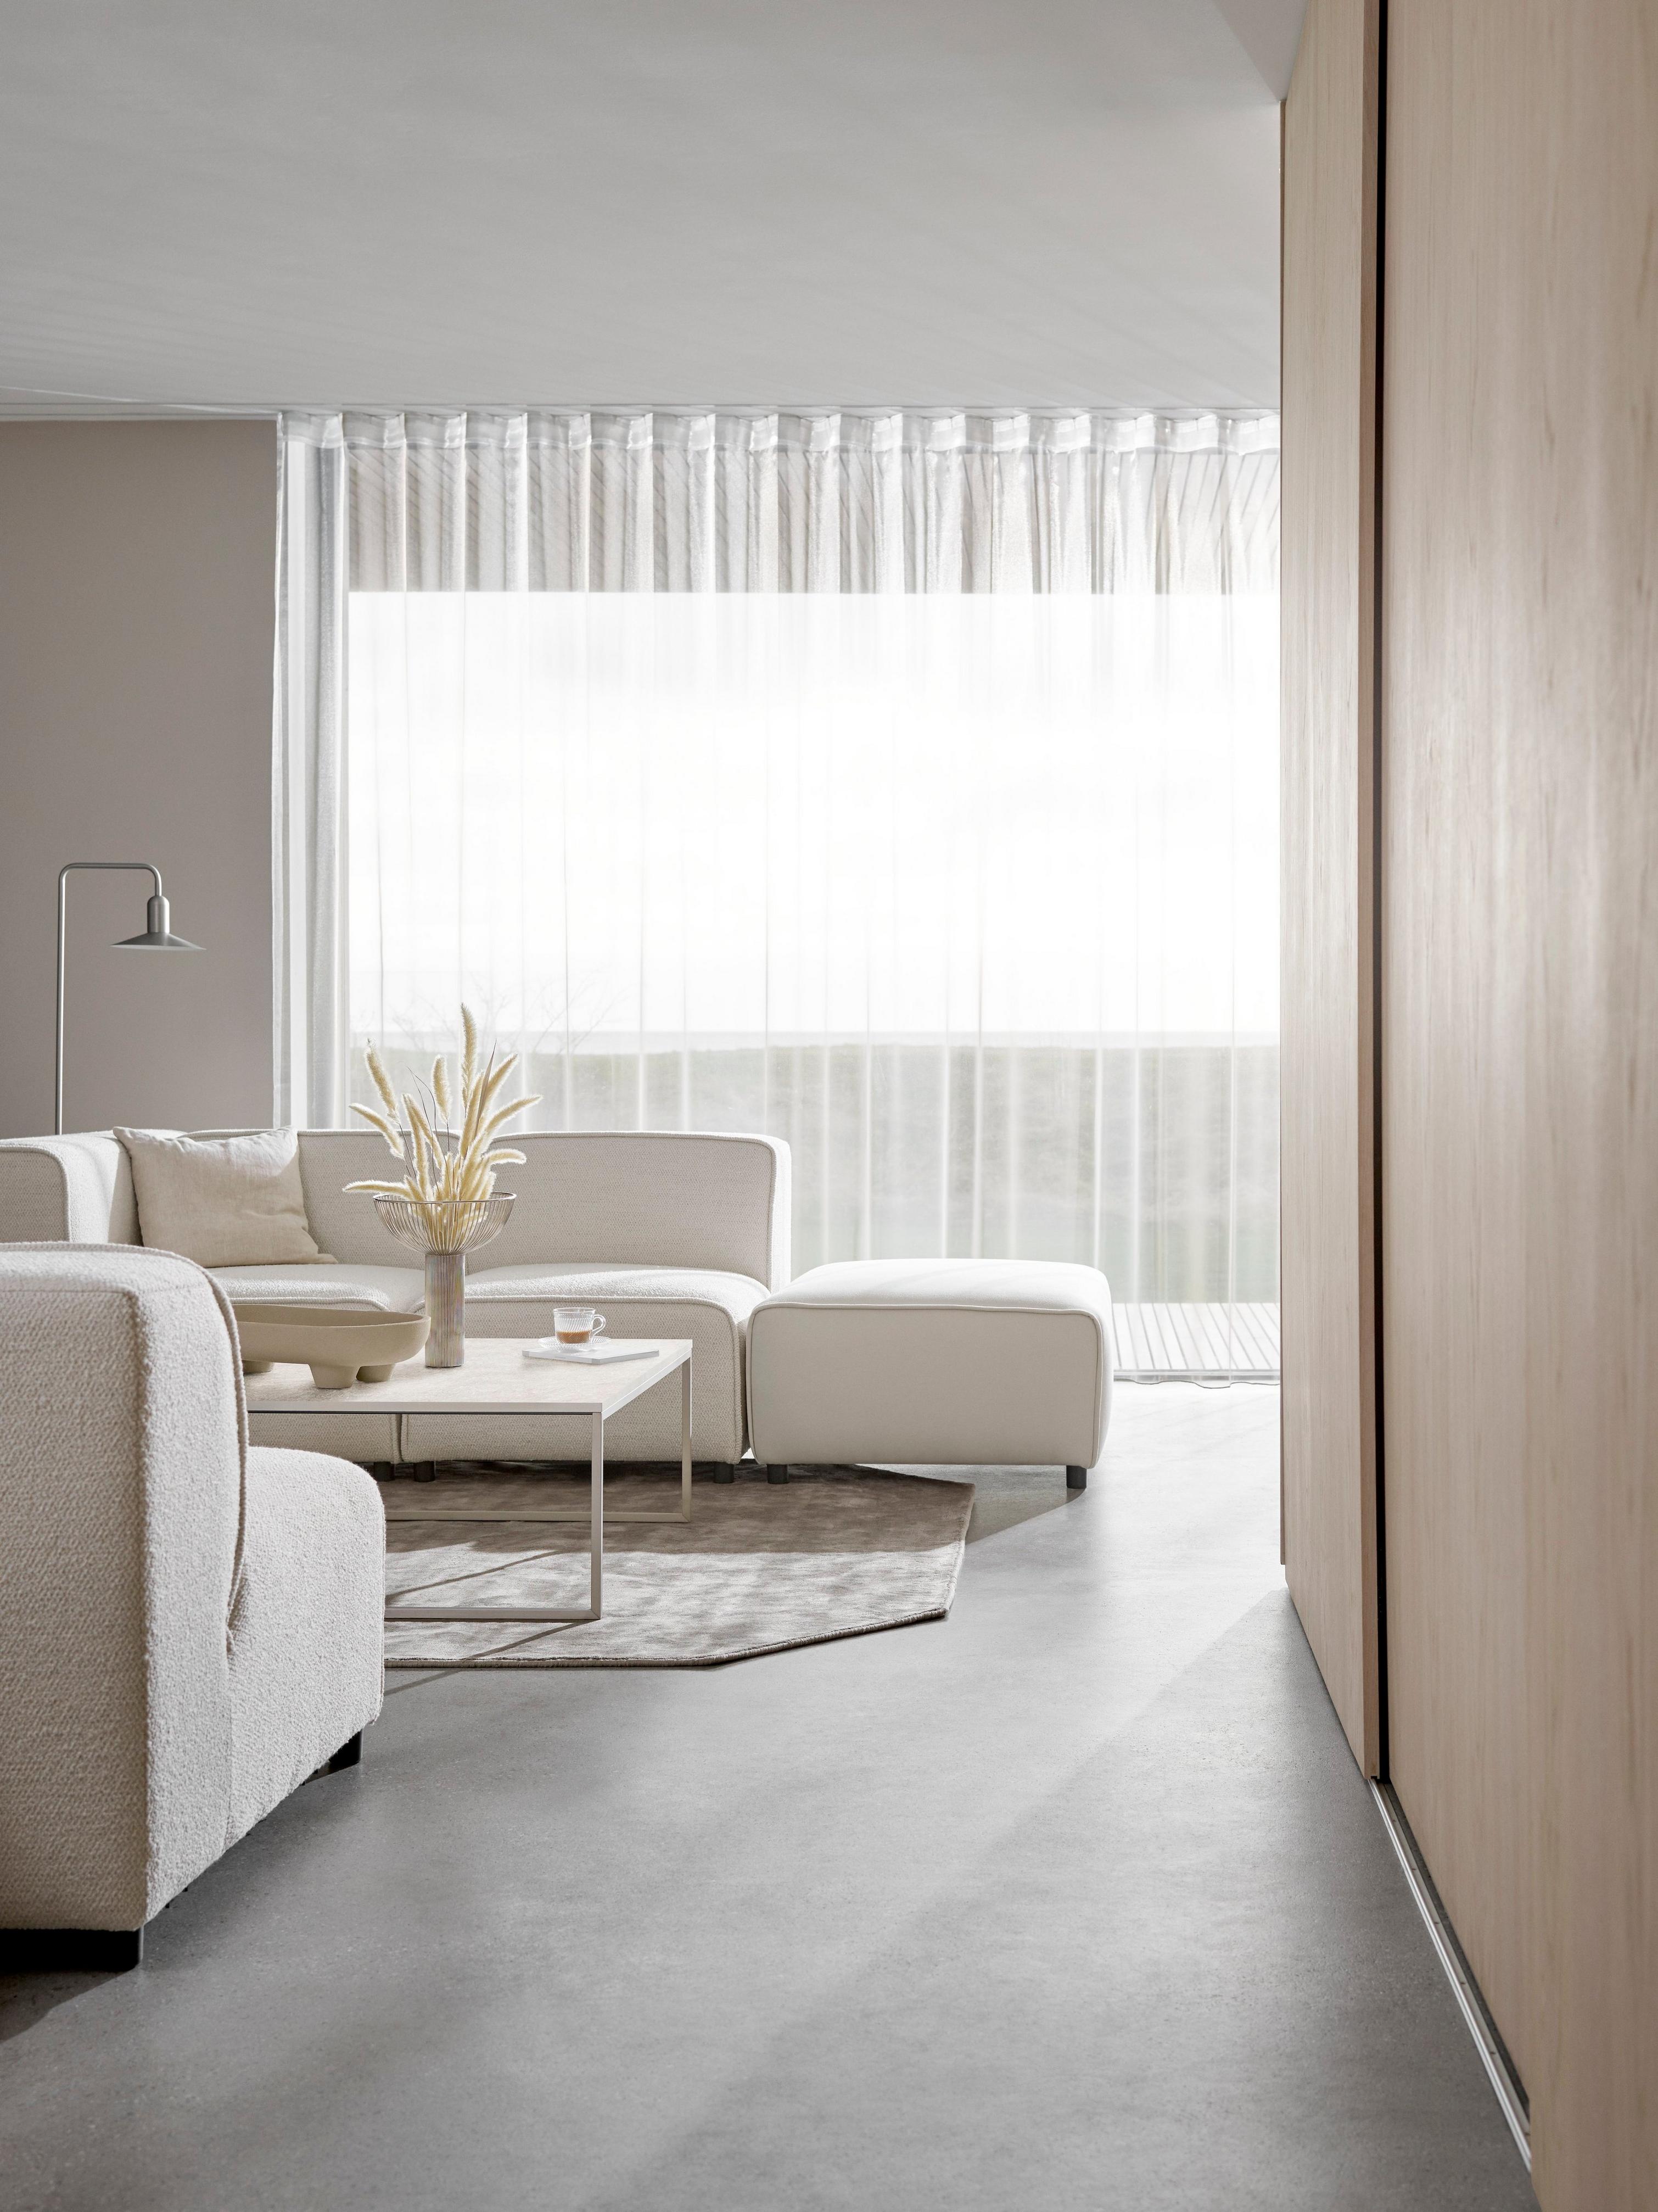 Kermanvärinen Carmo-sohva minimalistisessa olohuoneessa, läpinäkyvät verhot hajauttavat valoa.